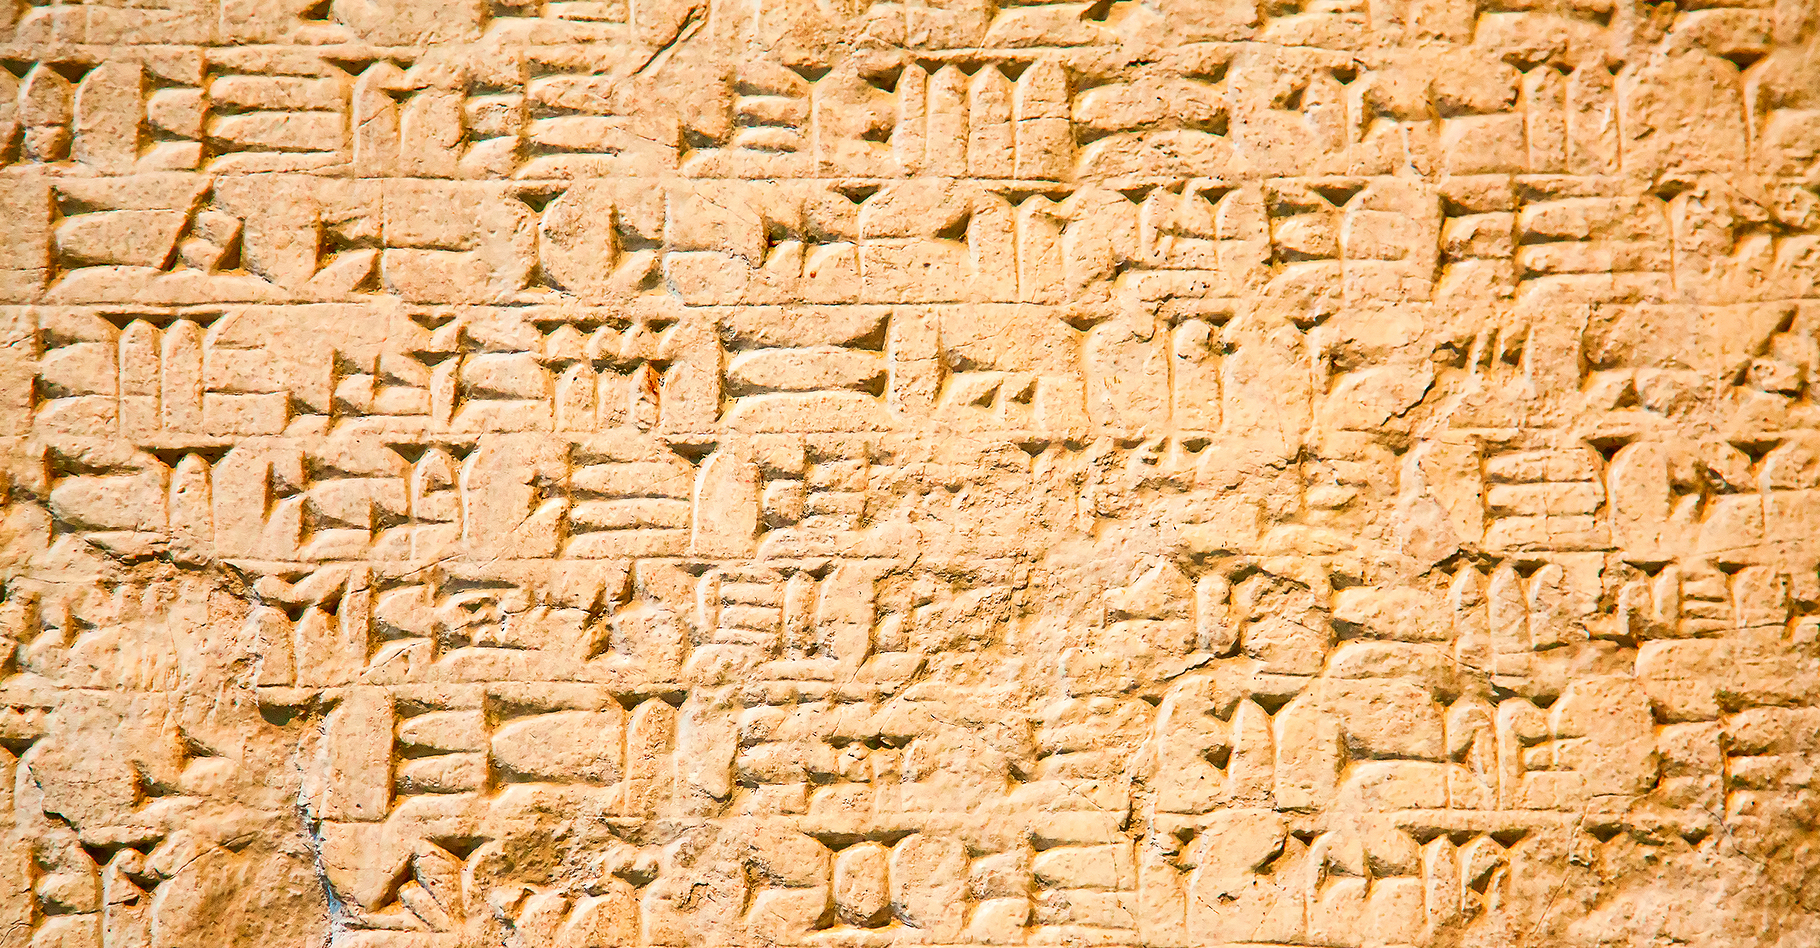 C’est en Mésopotamie que l’écriture a été inventée. Ici, une tablette couverte de signes cunéiformes provenant d’Irak. © Fedor Selivanov, Shutterstock